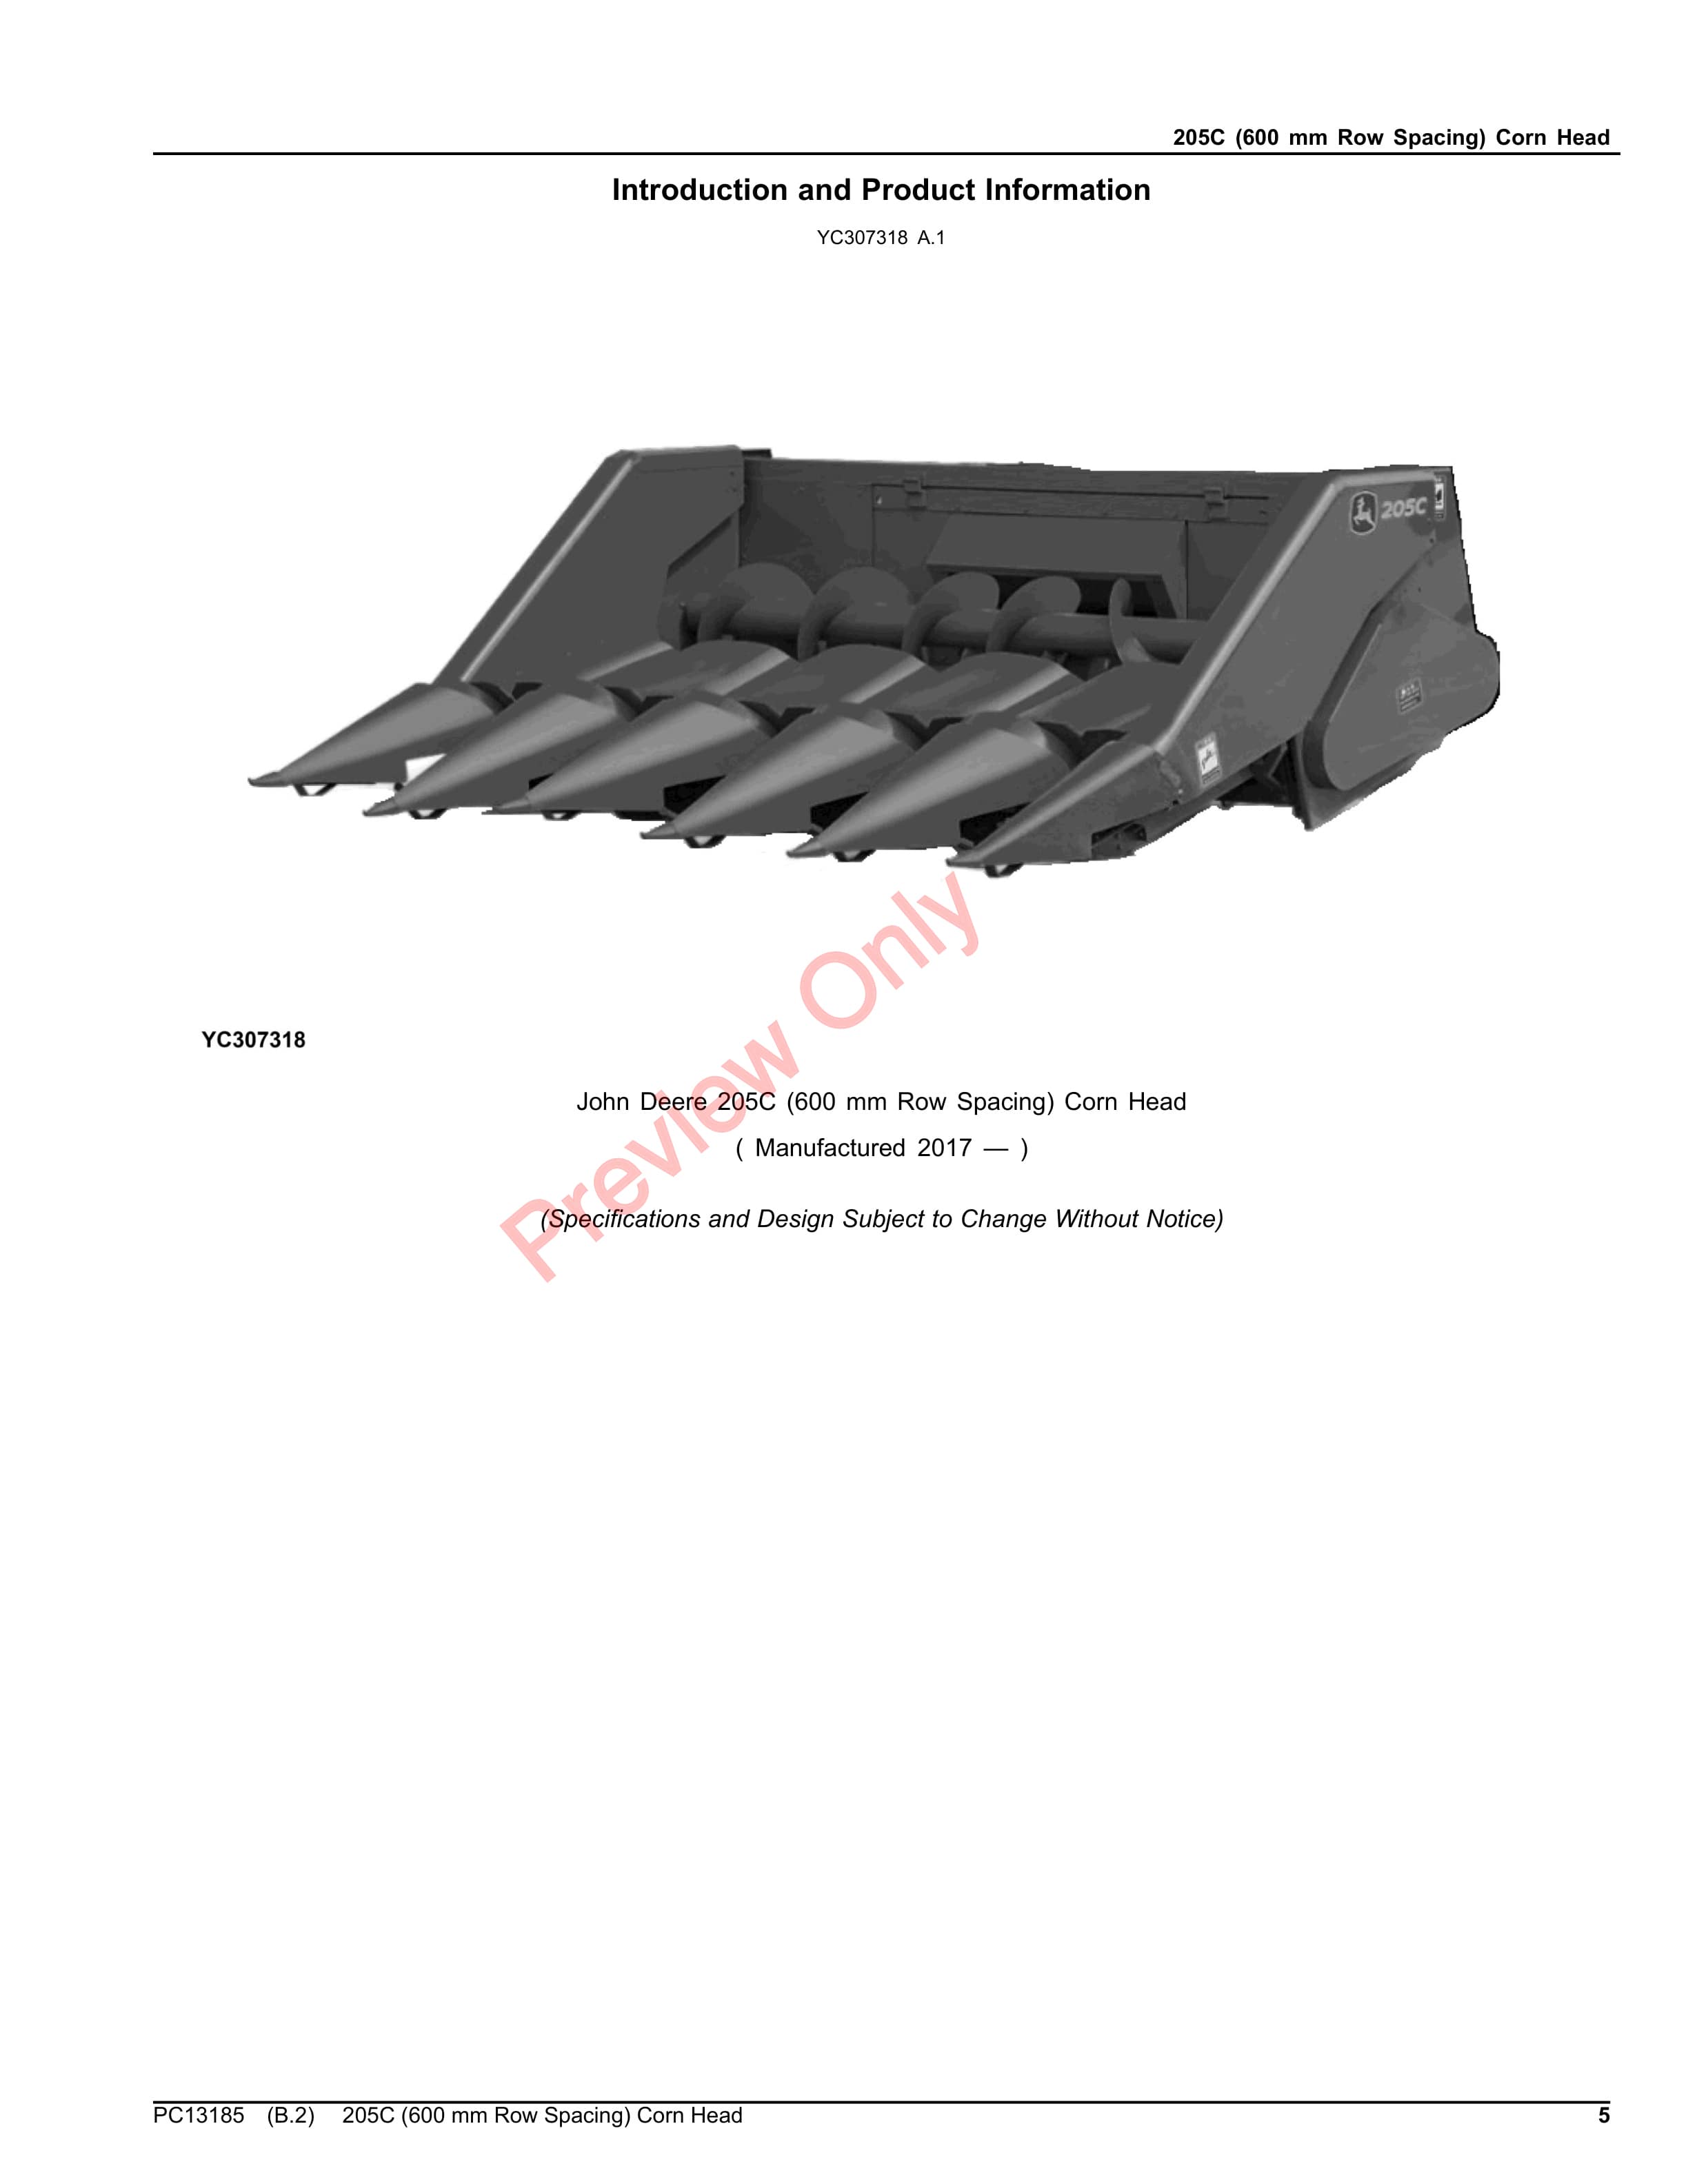 John Deere 205C (600 mm Row Spacing) Corn Head Parts Catalog PC13185 25JUL23-5